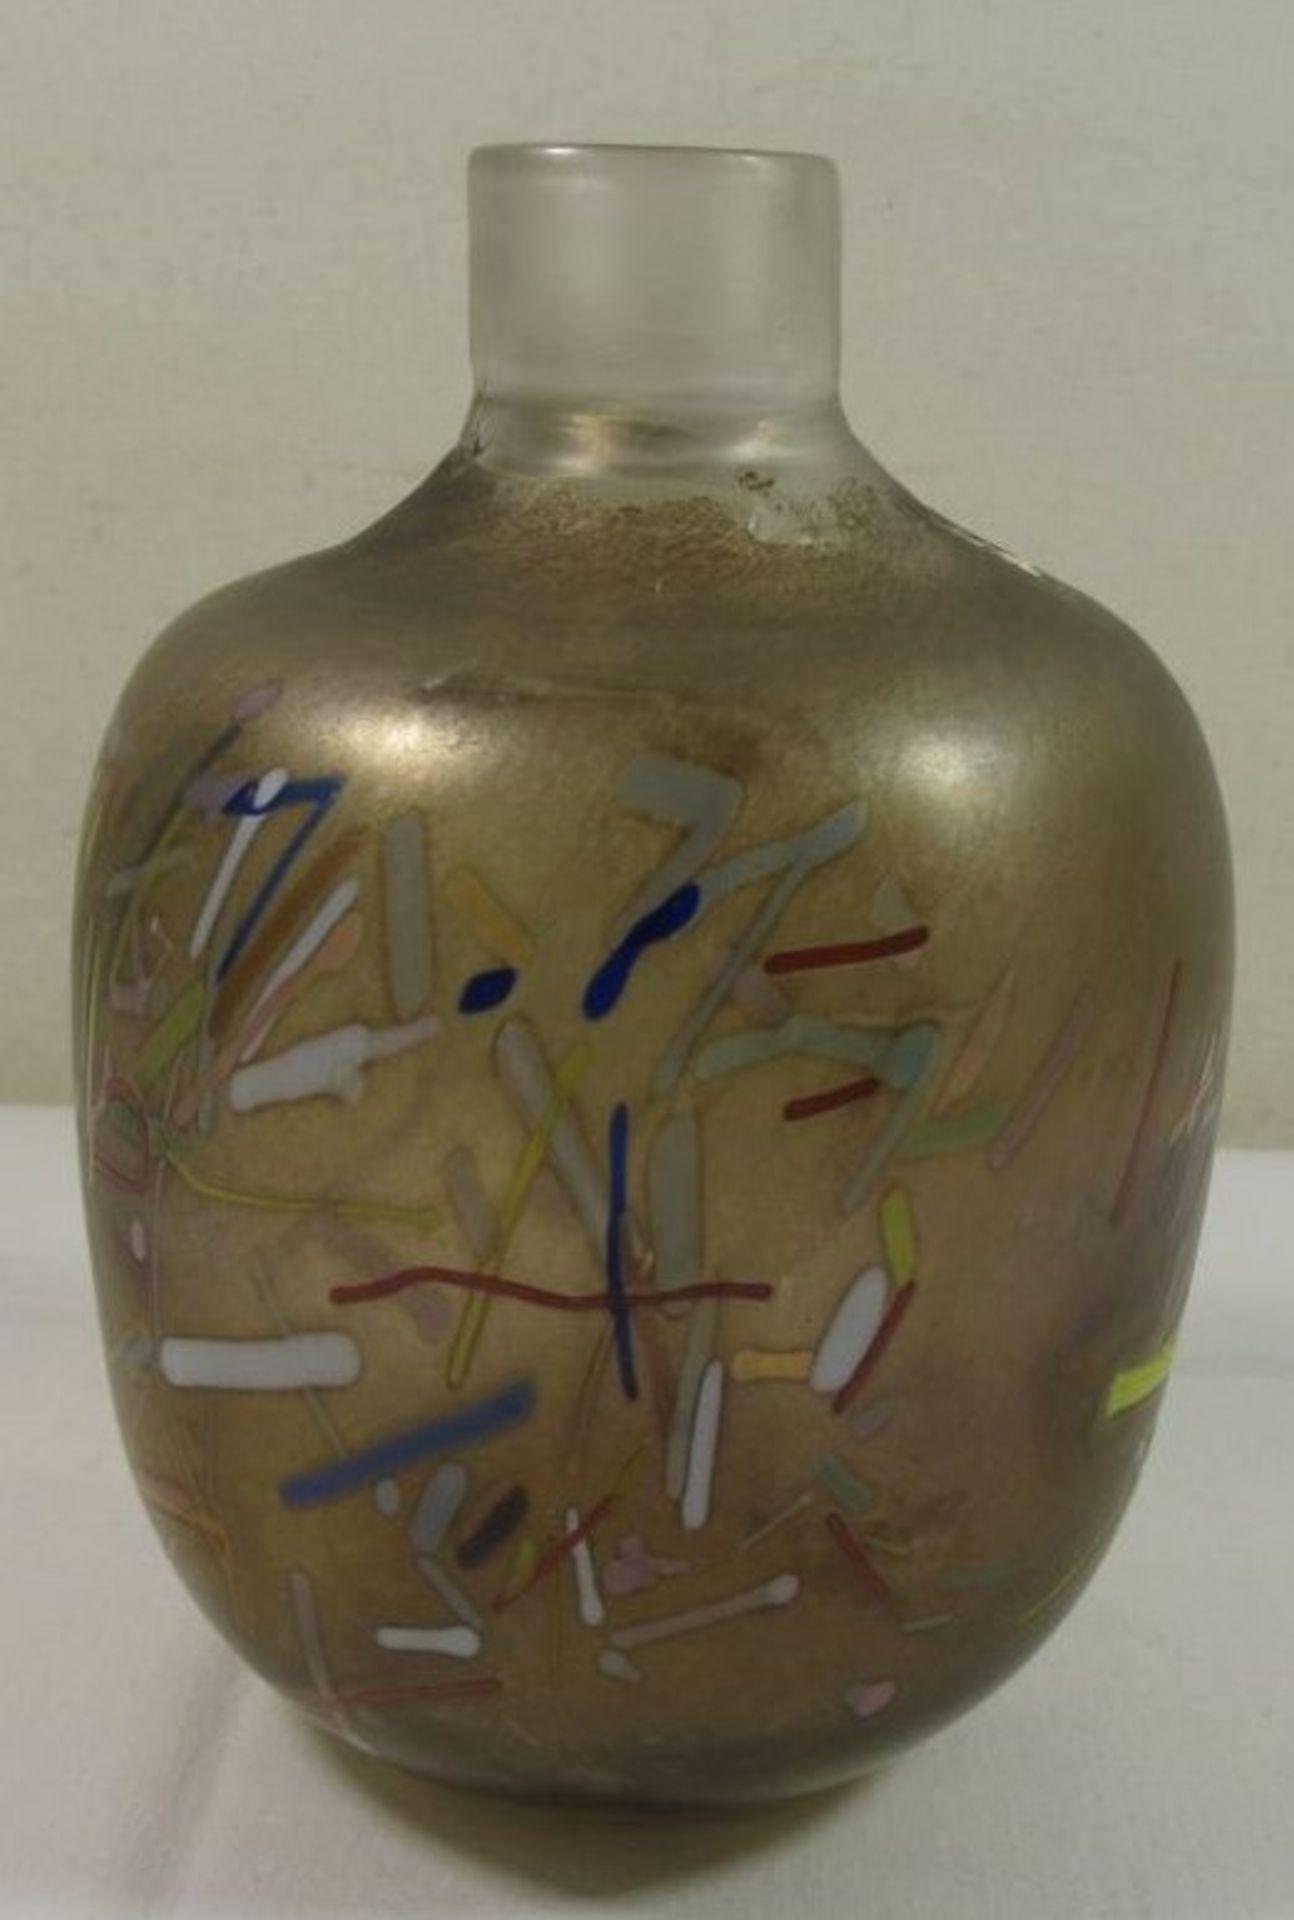 Kunstglasvase, wohl Kosta Boda, farbige Einschmelzungen, H-17cm.